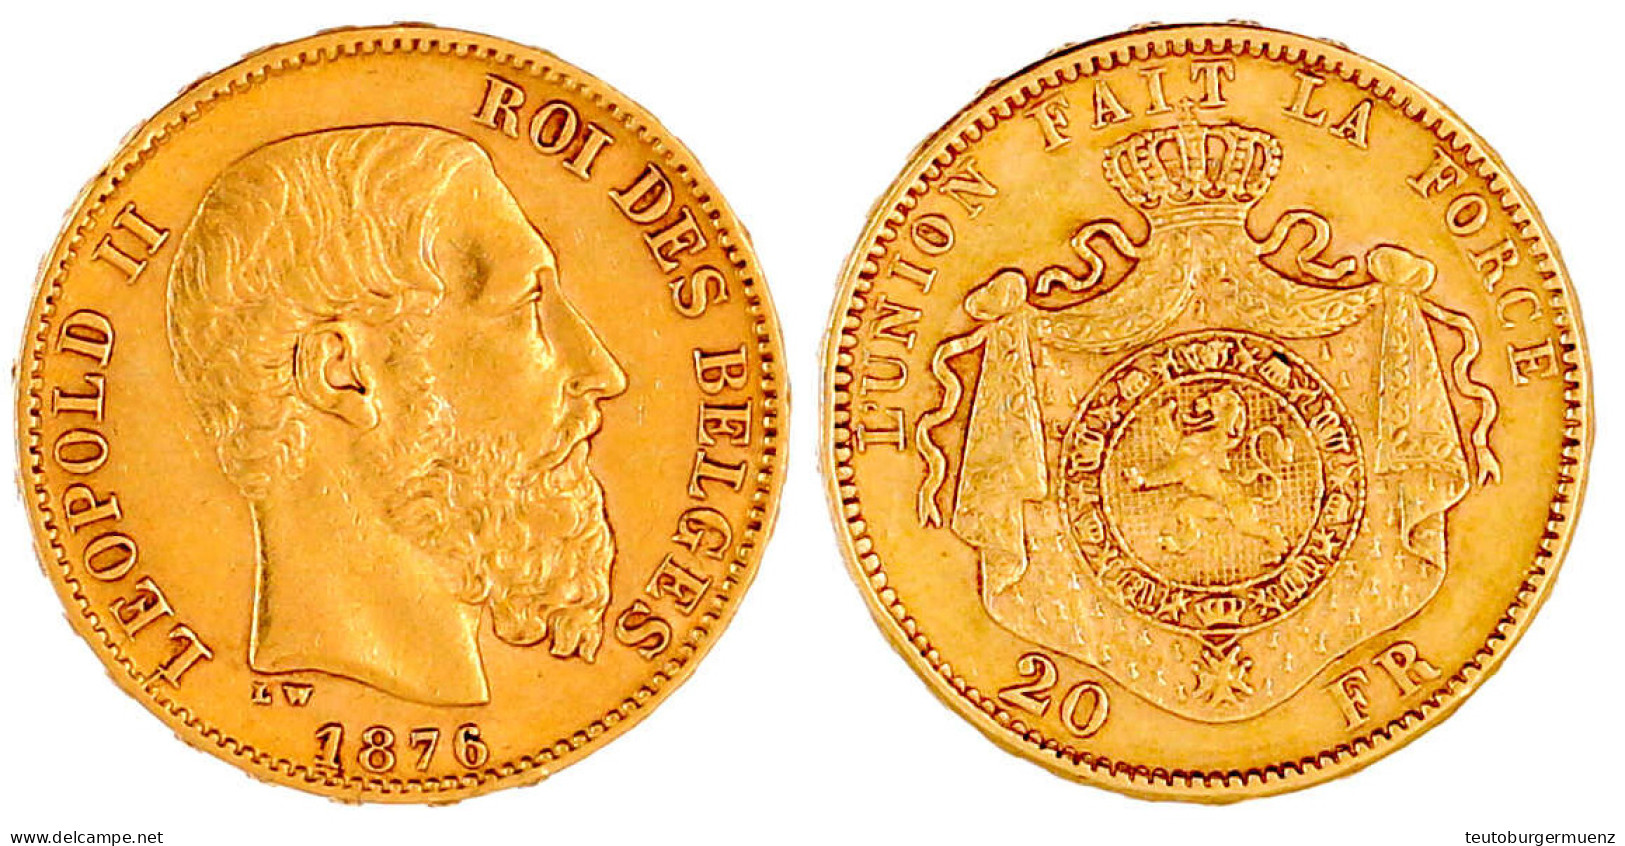 20 Francs 1876. Pos. A. 6,45 G. 900/1000. Vorzüglich. Krause/Mishler 37. - 20 Francs (gold)